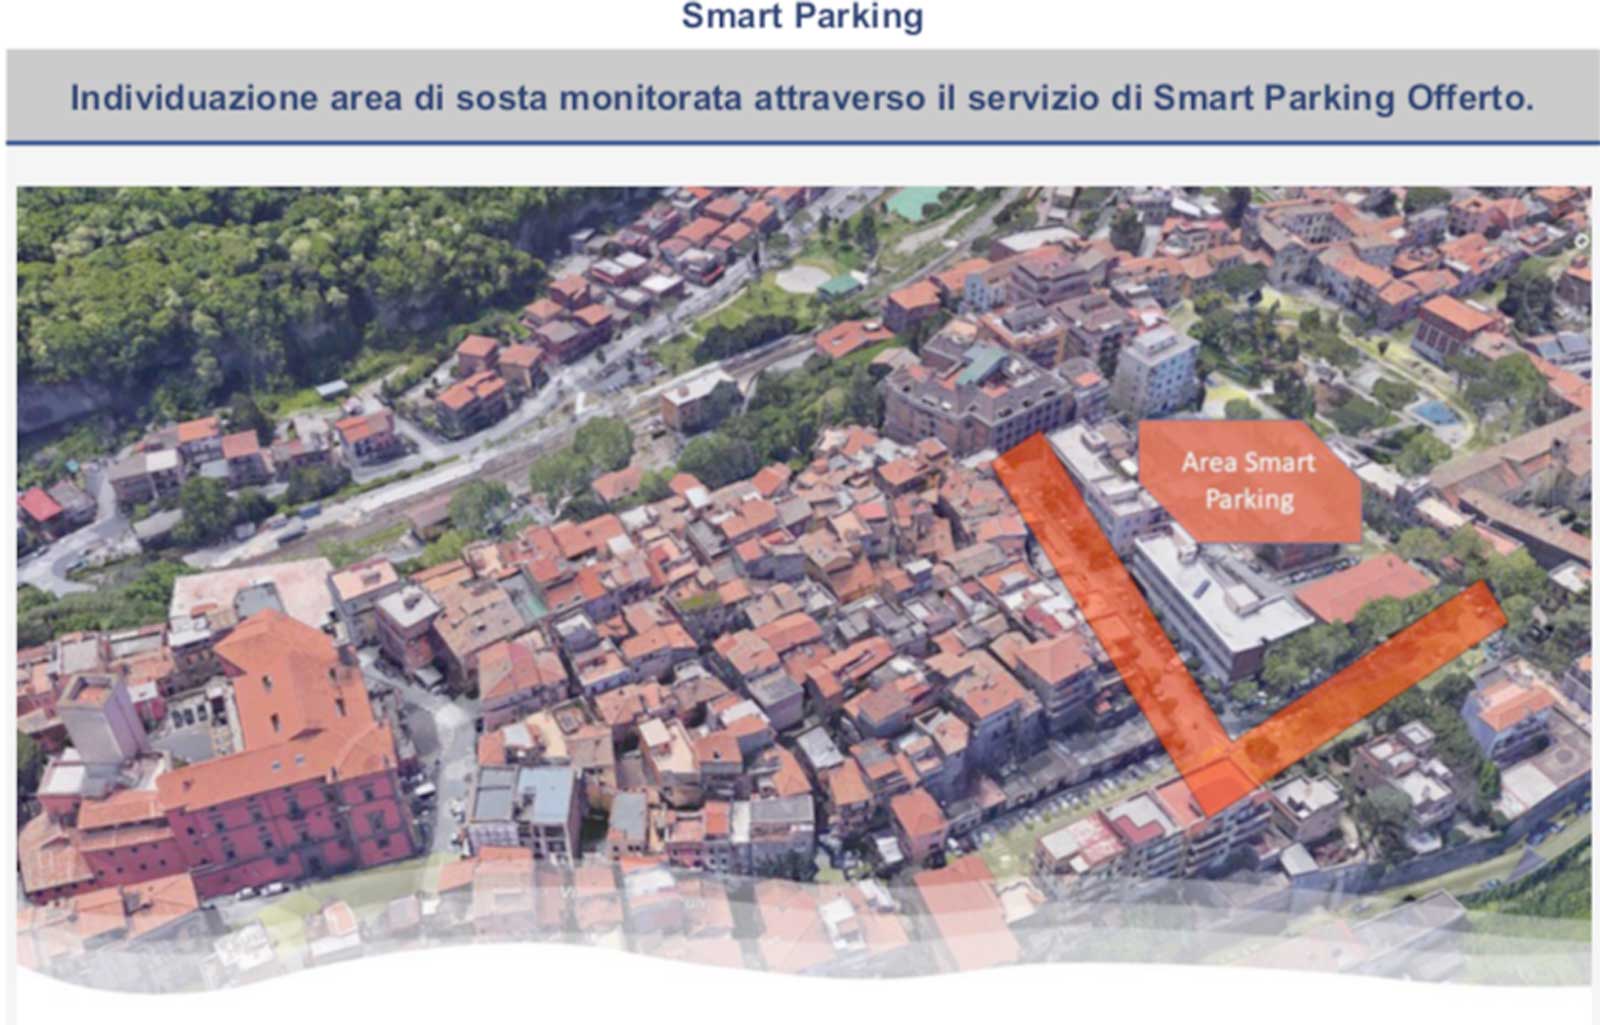 A Marino arrivano 3 parcheggi intelligenti: una app 'condurrà' al posto libero